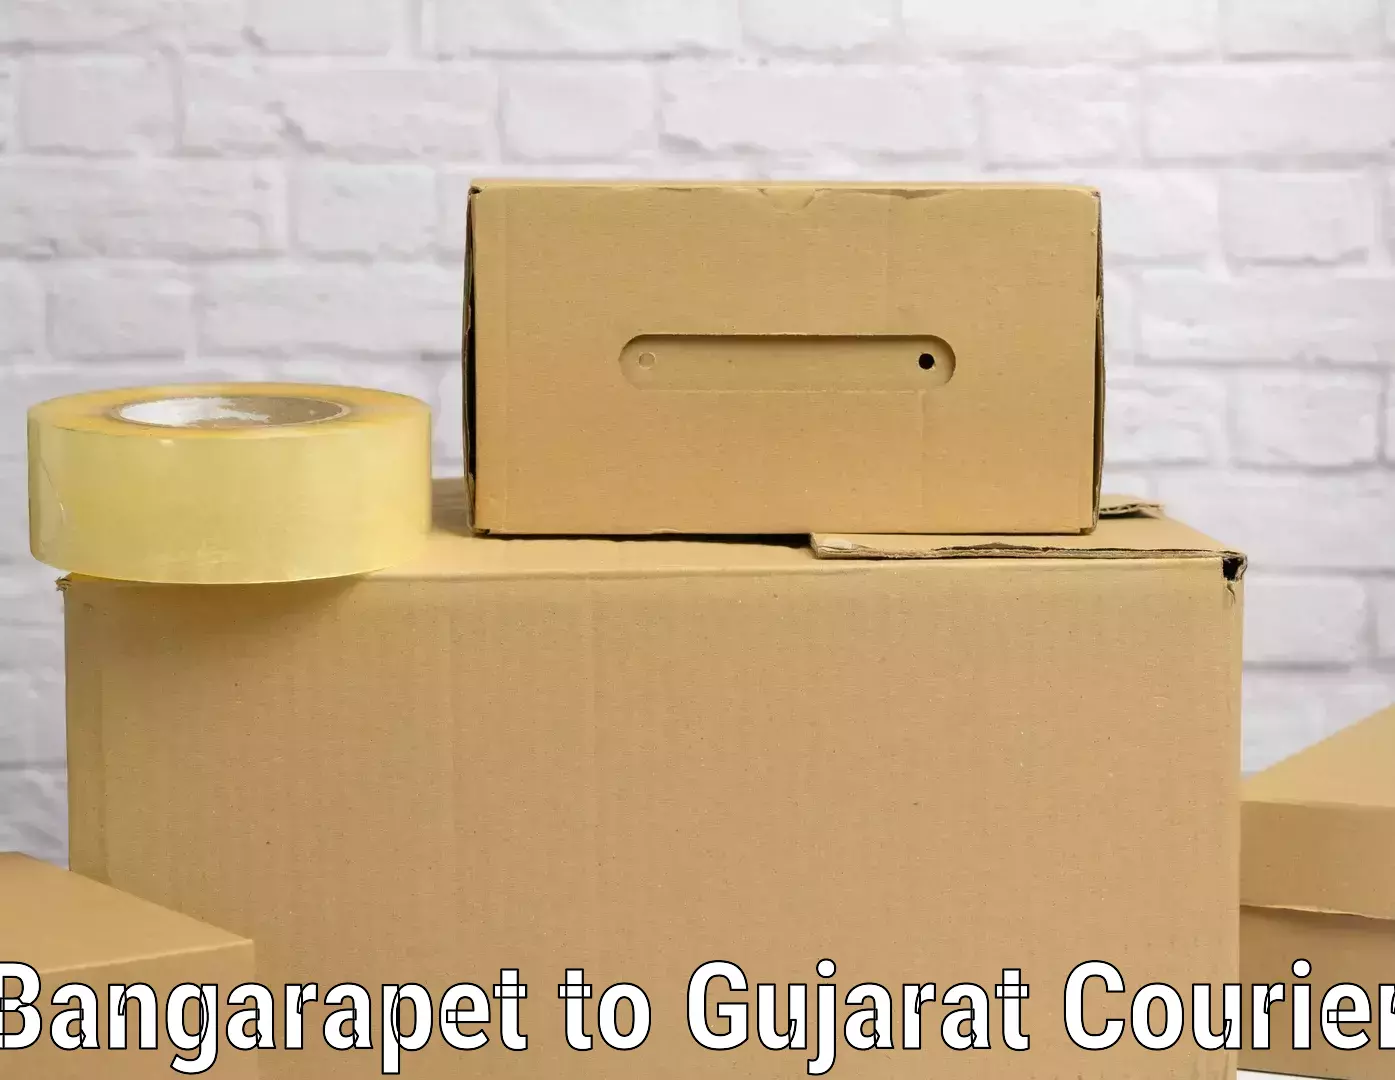 Baggage delivery planning Bangarapet to Gujarat